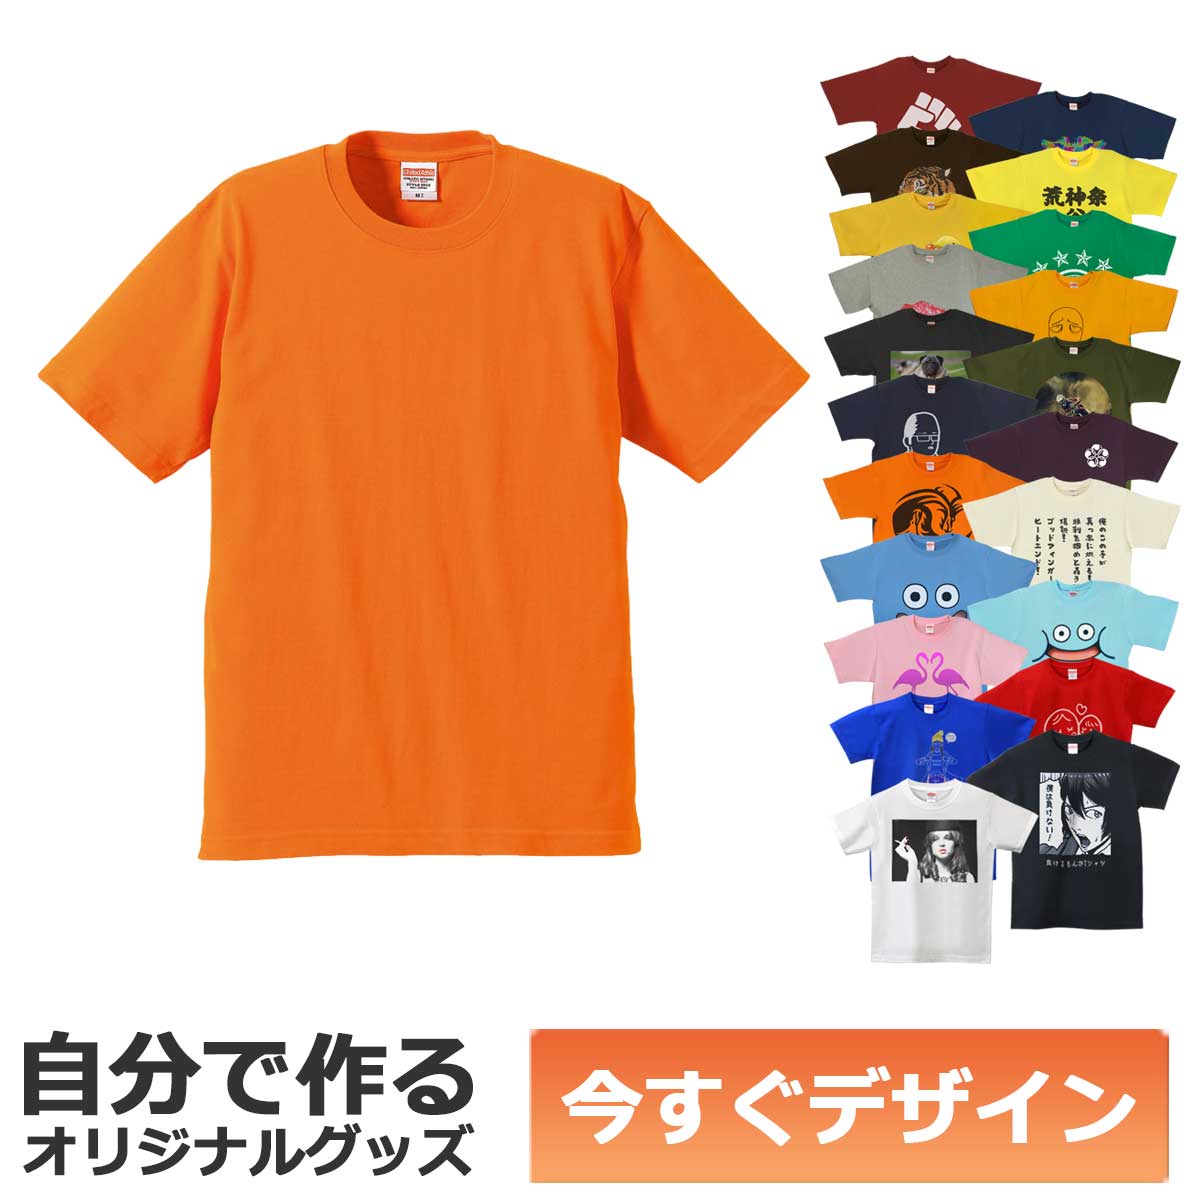 【即納可能】1枚から作れる 自分でデザイン オリジナル Tシャツ オレンジ 6.2oz プレミアム メール便可